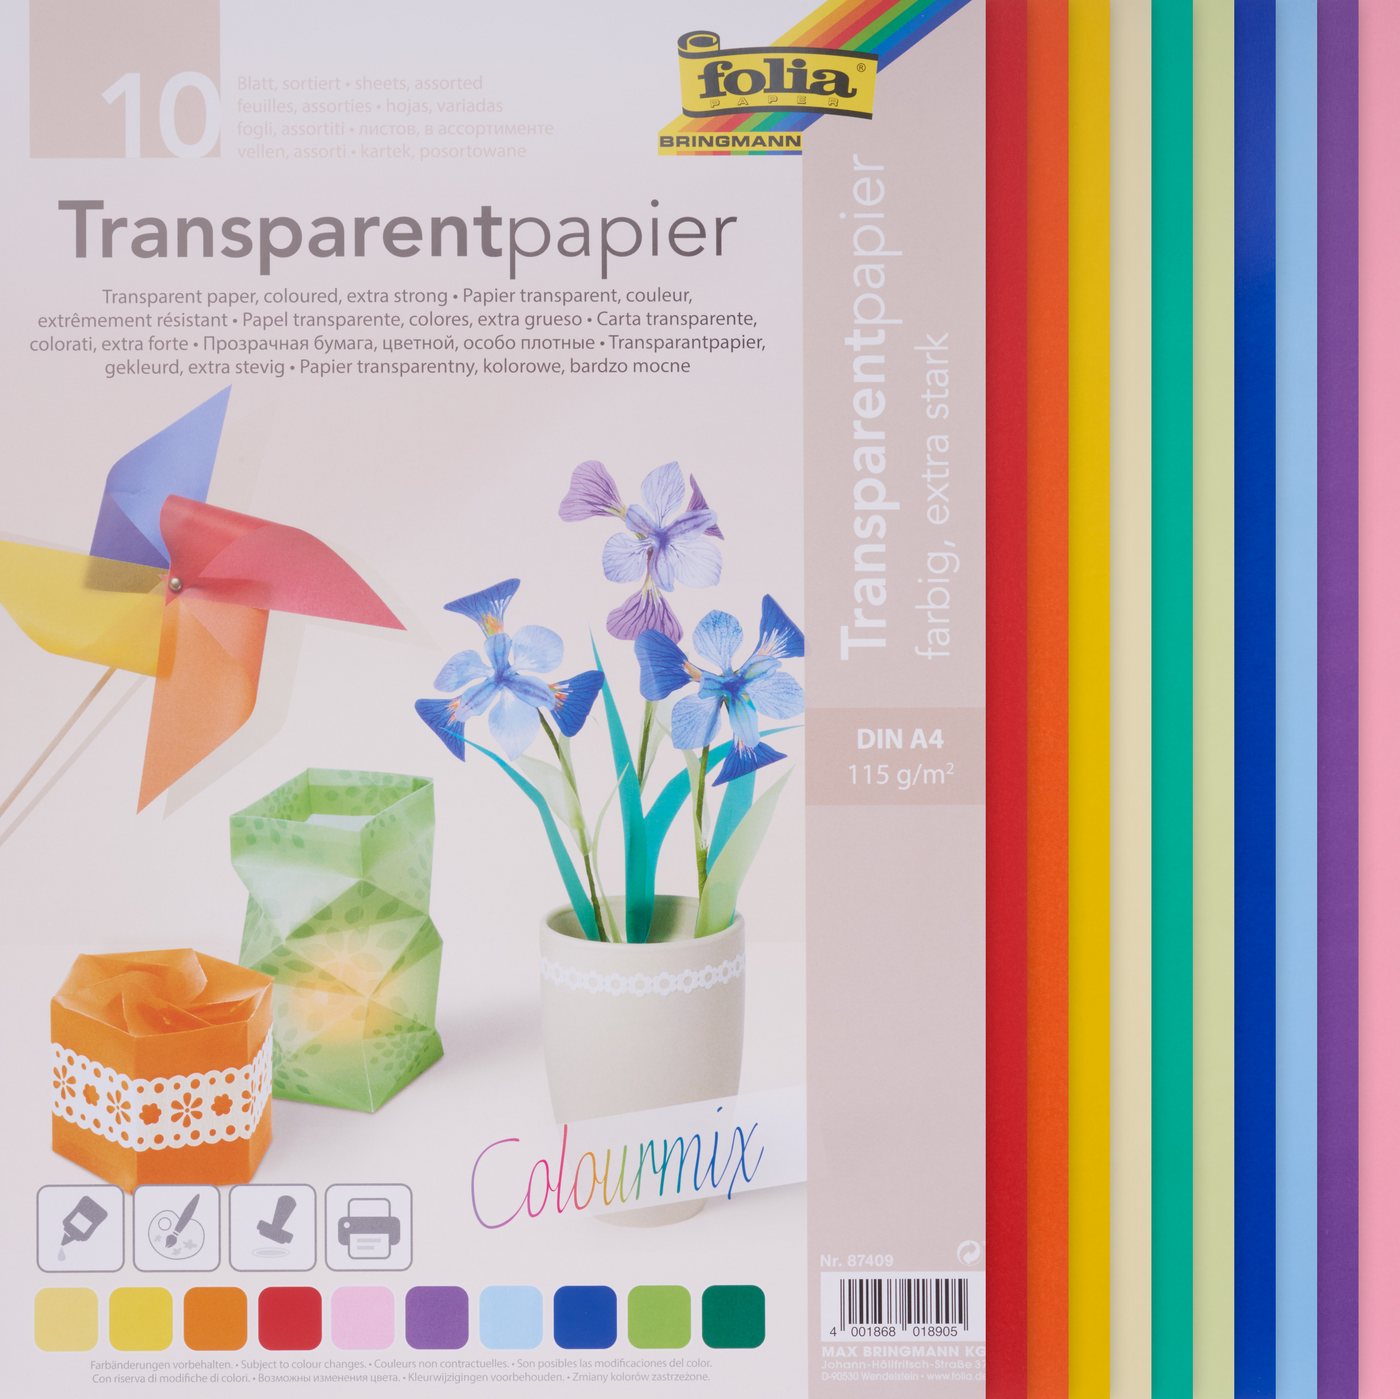 Folia Transparentpapier Transparentpapier, 10 Blatt von Folia